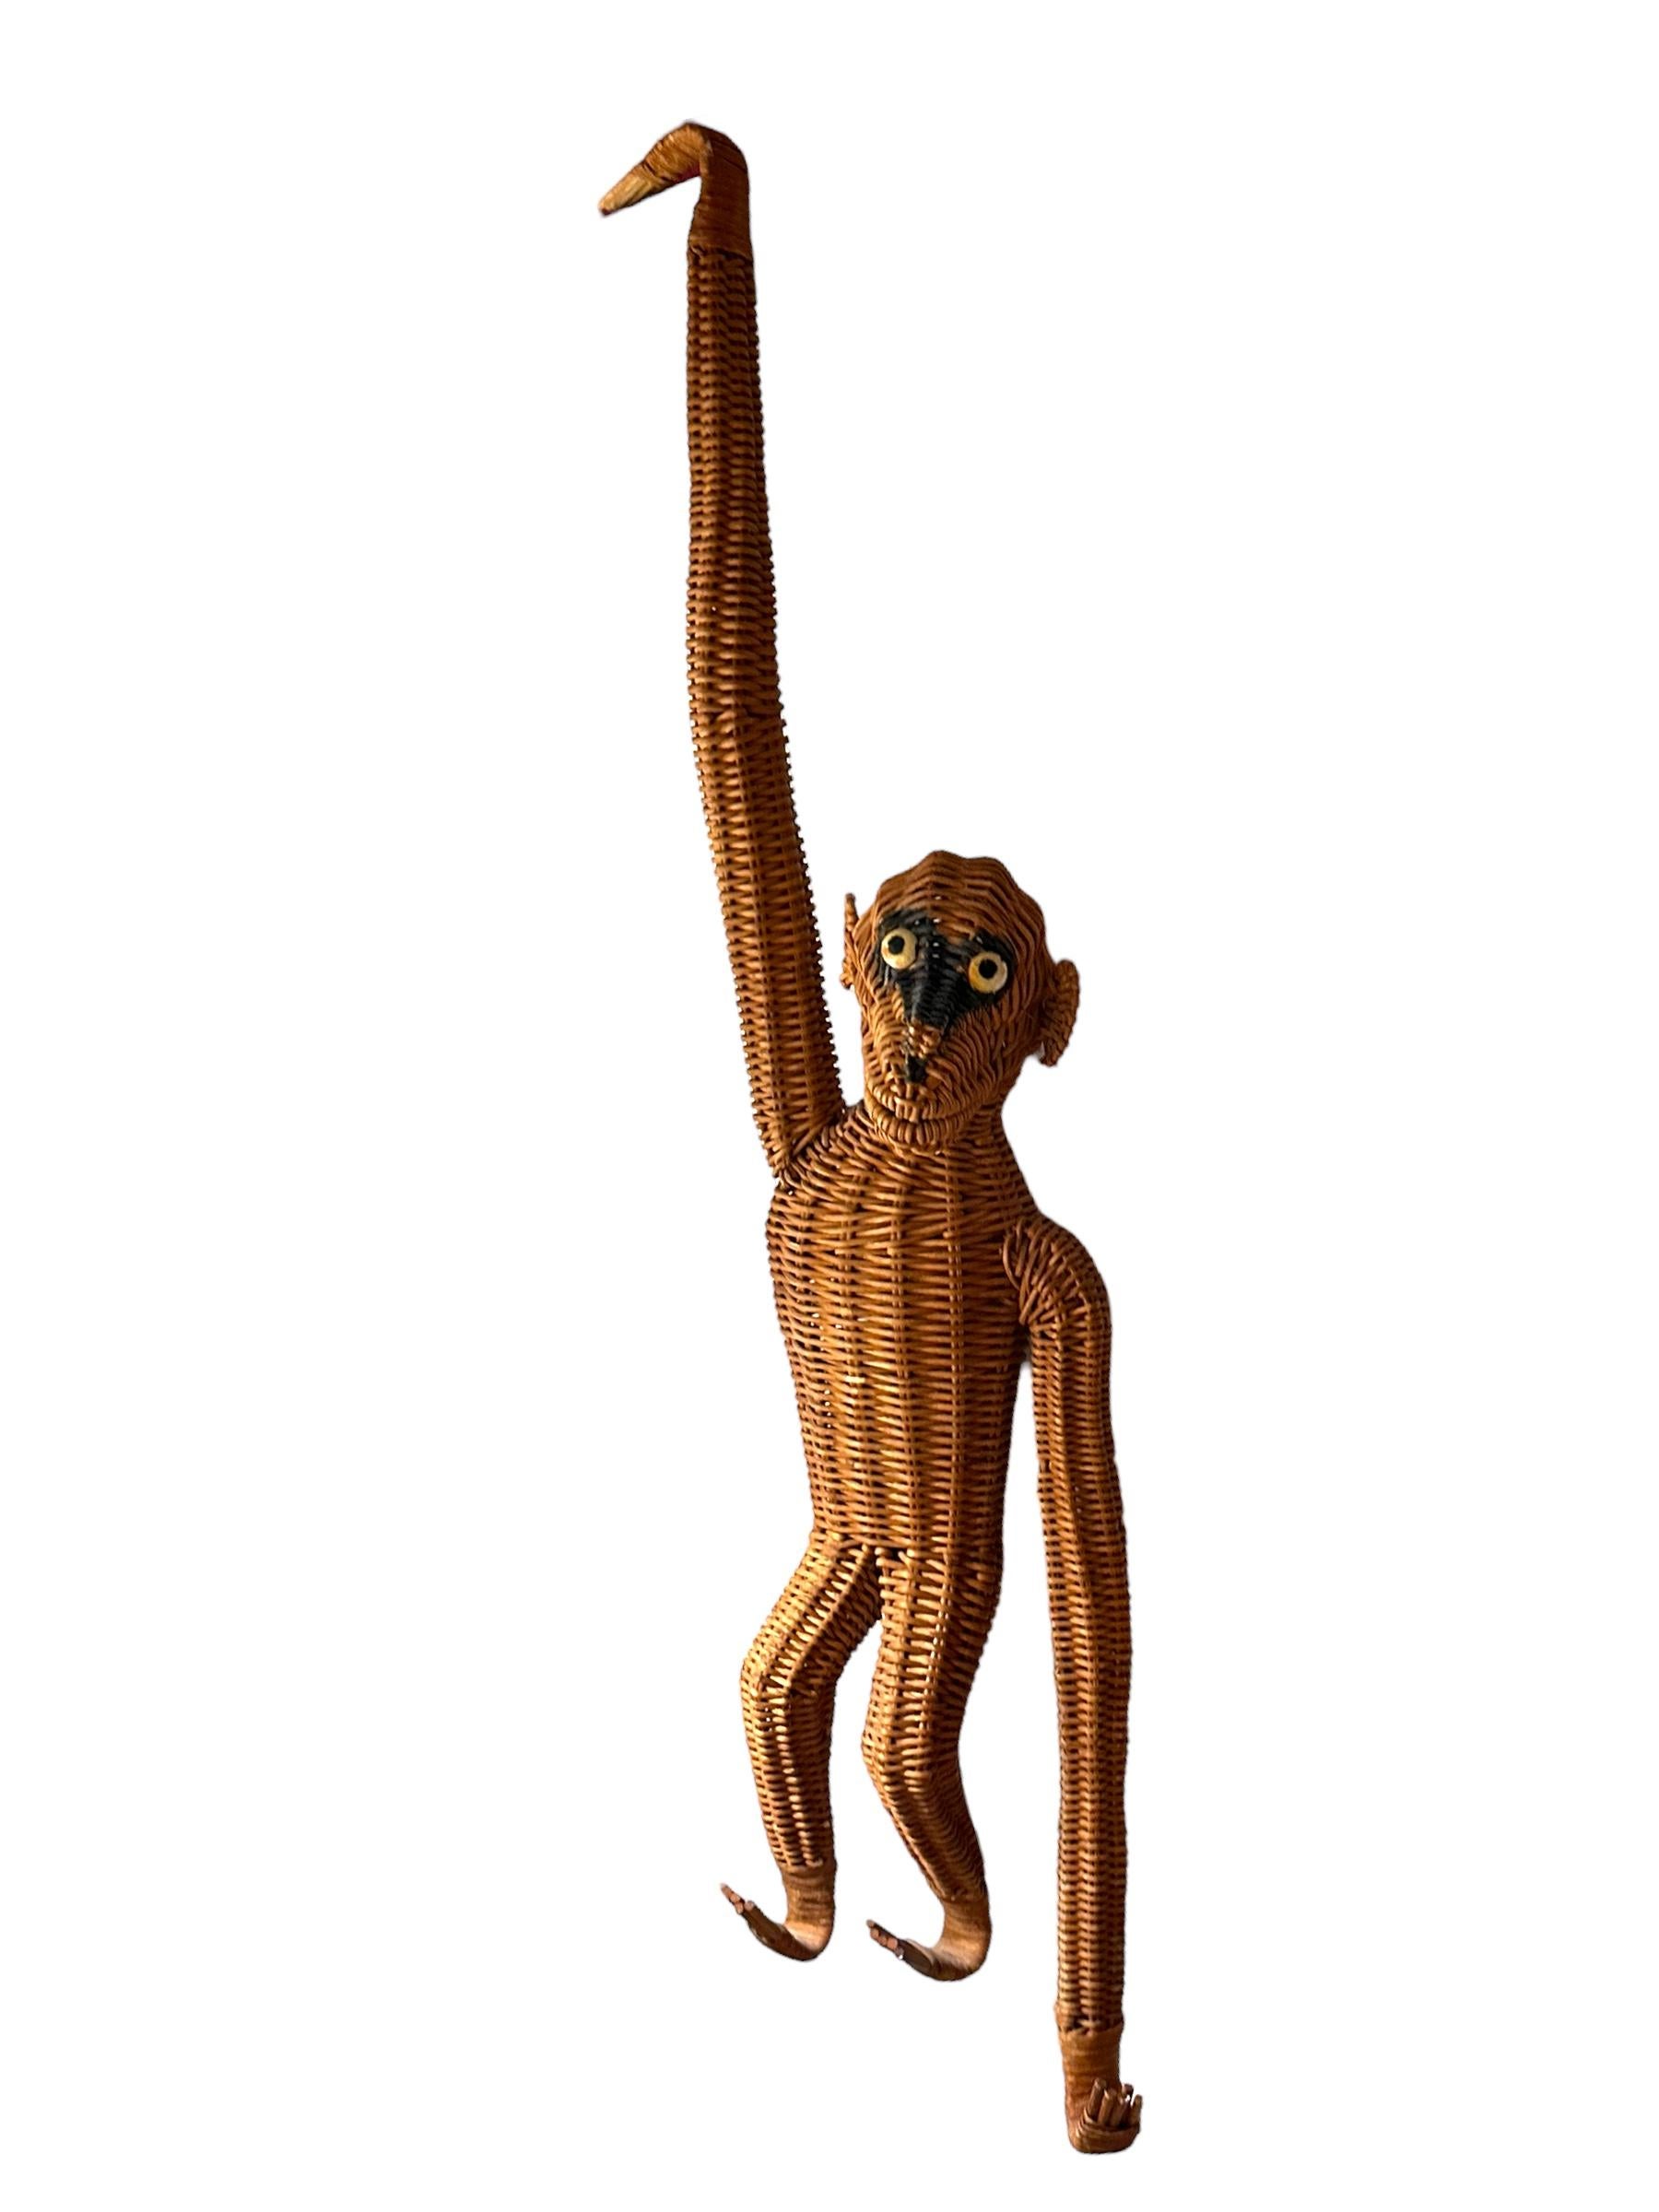 Offert dans le style de Mario Lopez Torres, ce singe suspendu est une figurine Animalia en osier et rotin de style Boho des années 1970. Cet animal en osier tressé français Animalia des années 1960-1970 est en très bon état. Il a cependant une